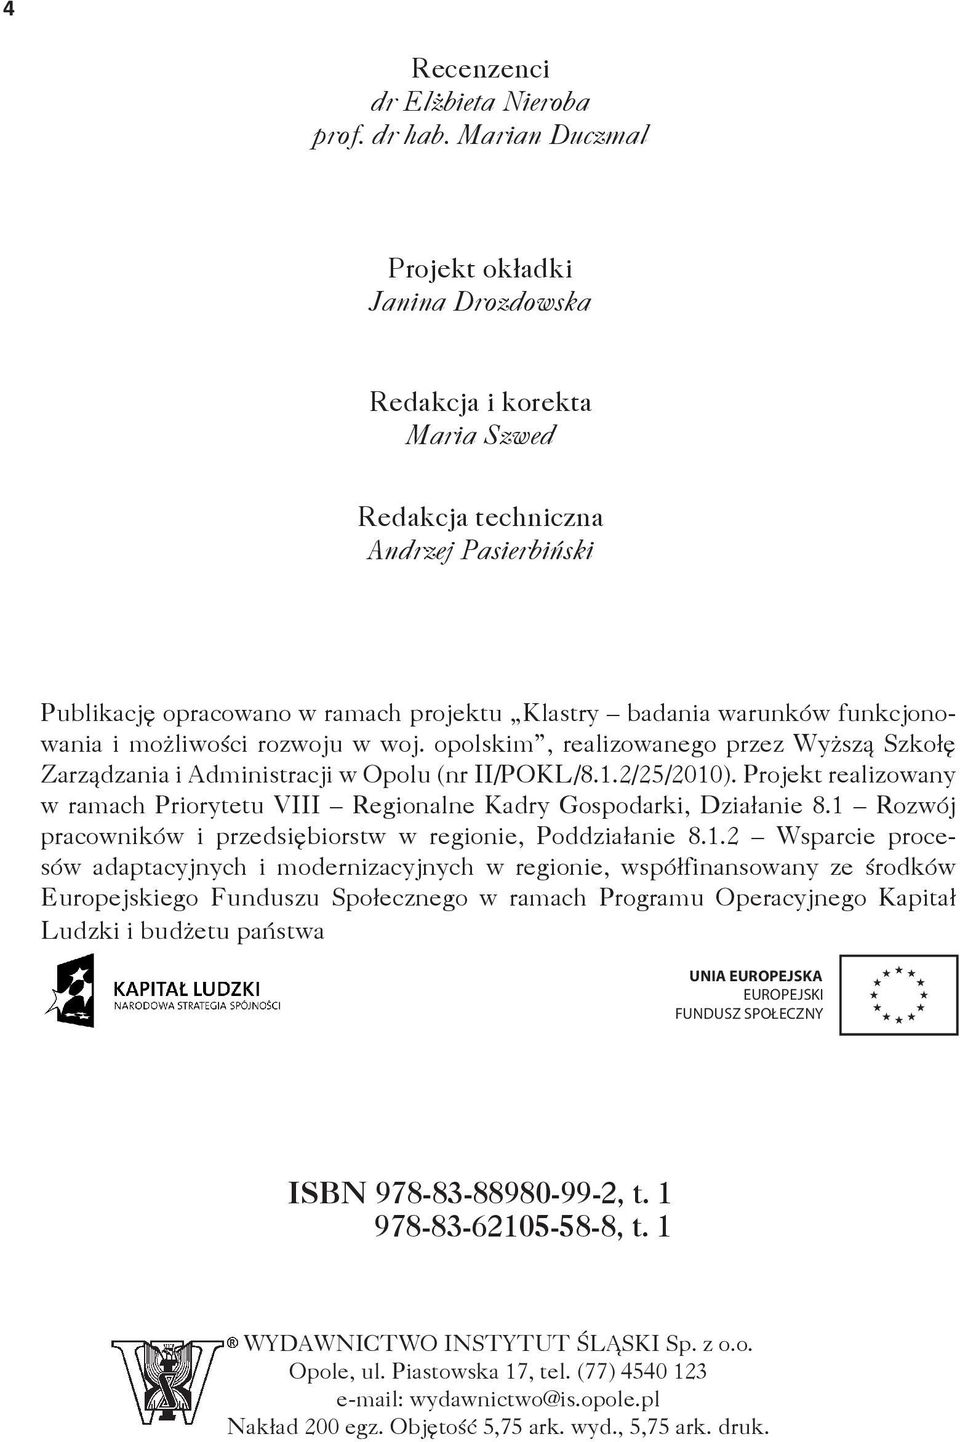 funkcjonowania i możliwości rozwoju w woj. opolskim, realizowanego przez Wyższą Szkołę Zarządzania i Administracji w Opolu (nr II/POKL/8.1.2/25/2010).